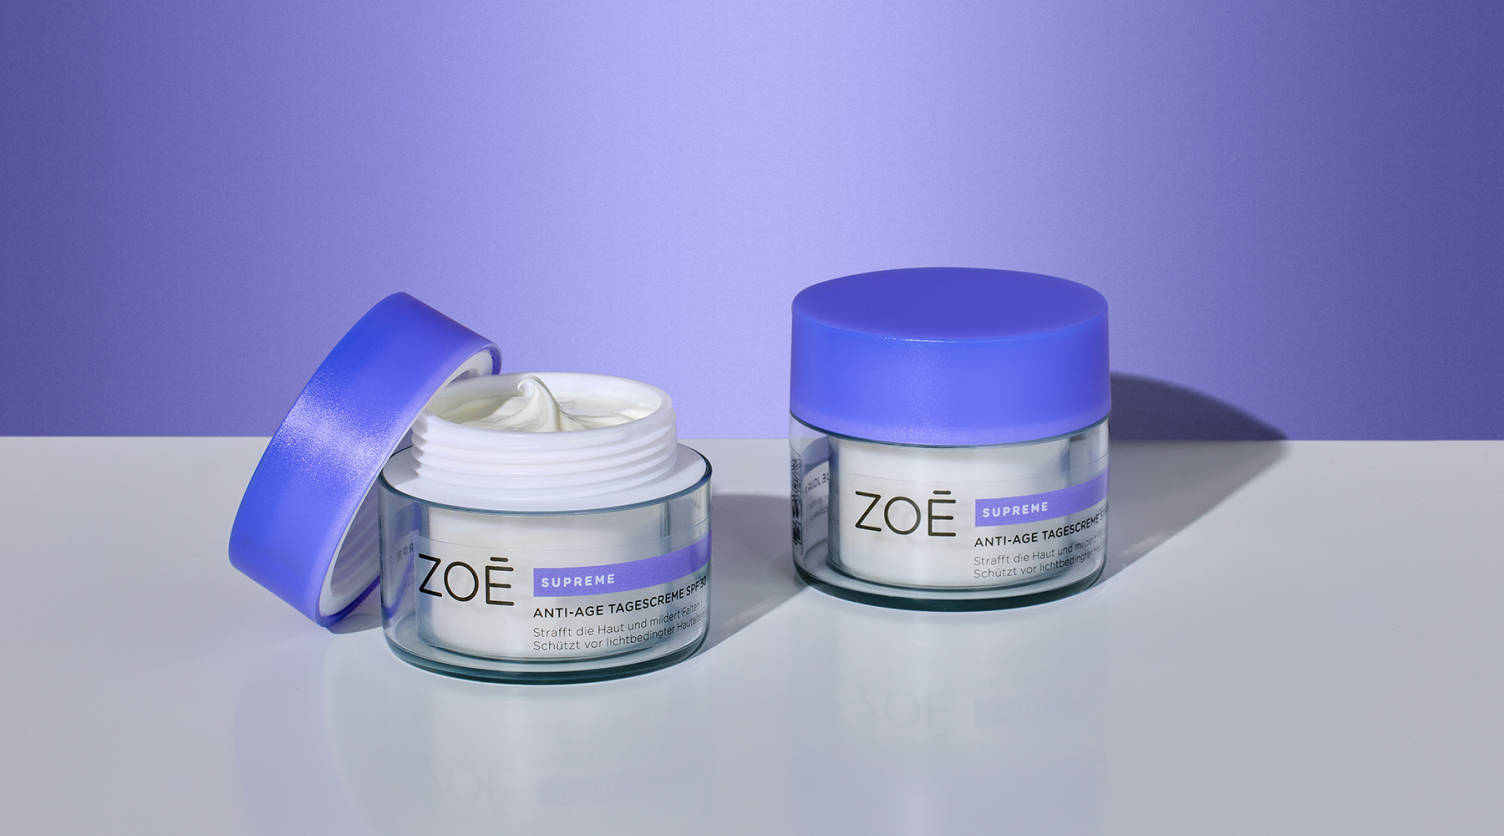 Image de produit de deux crèmes pour le visage de la marque Zoé